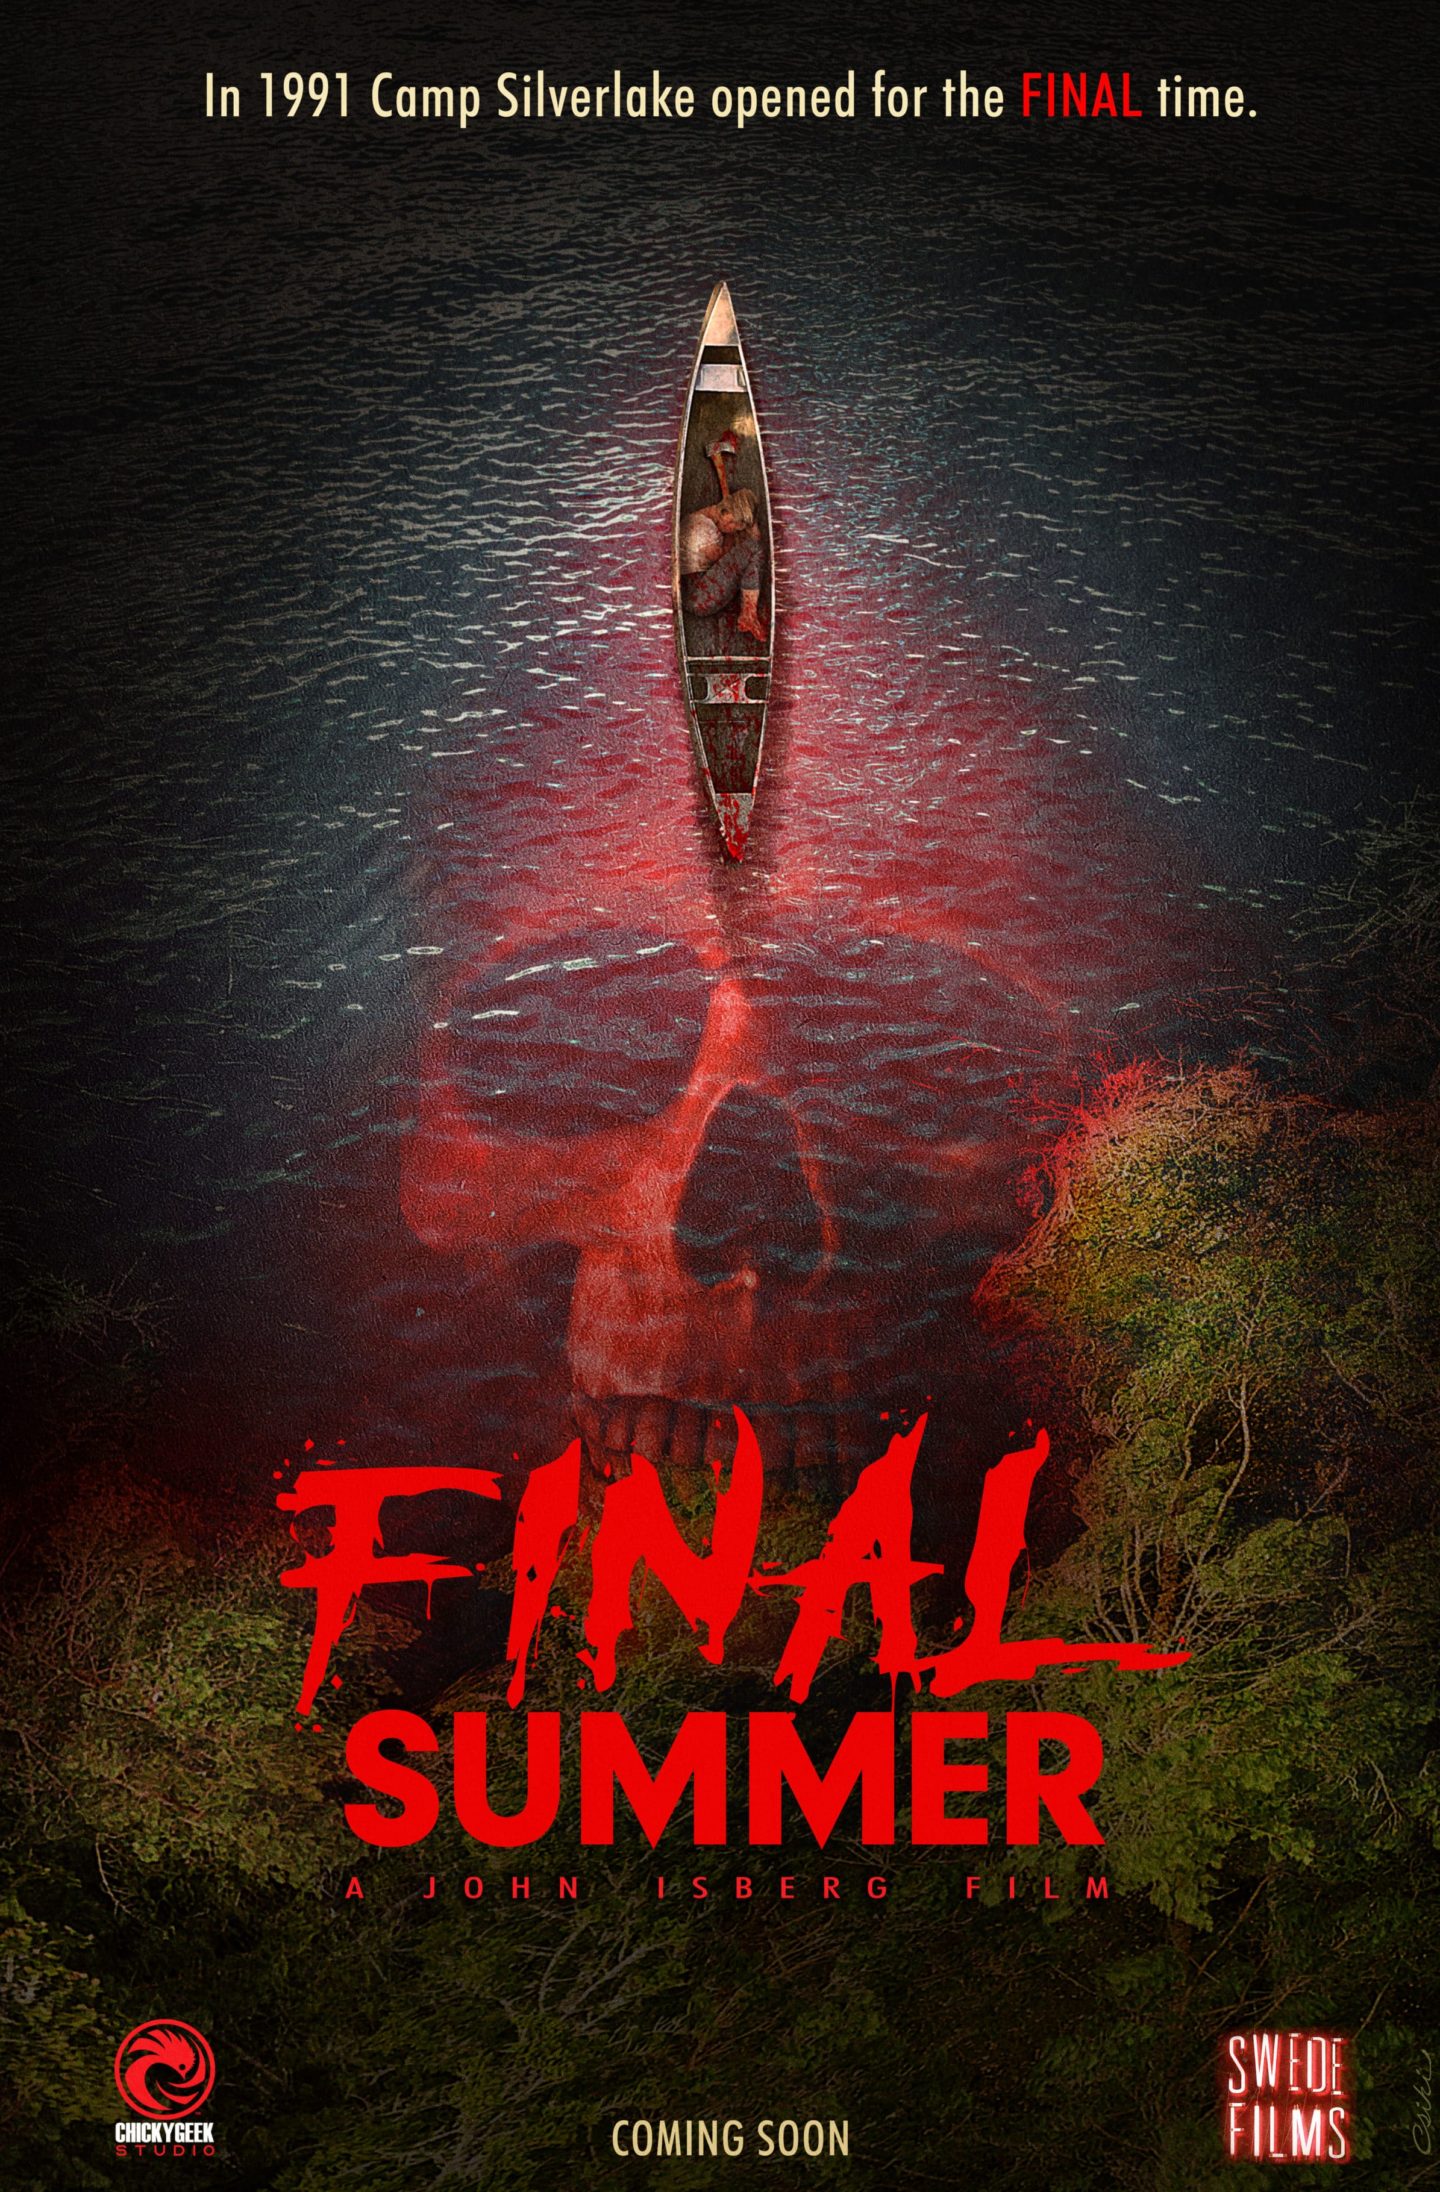 Final Summer Teaser Poster 2